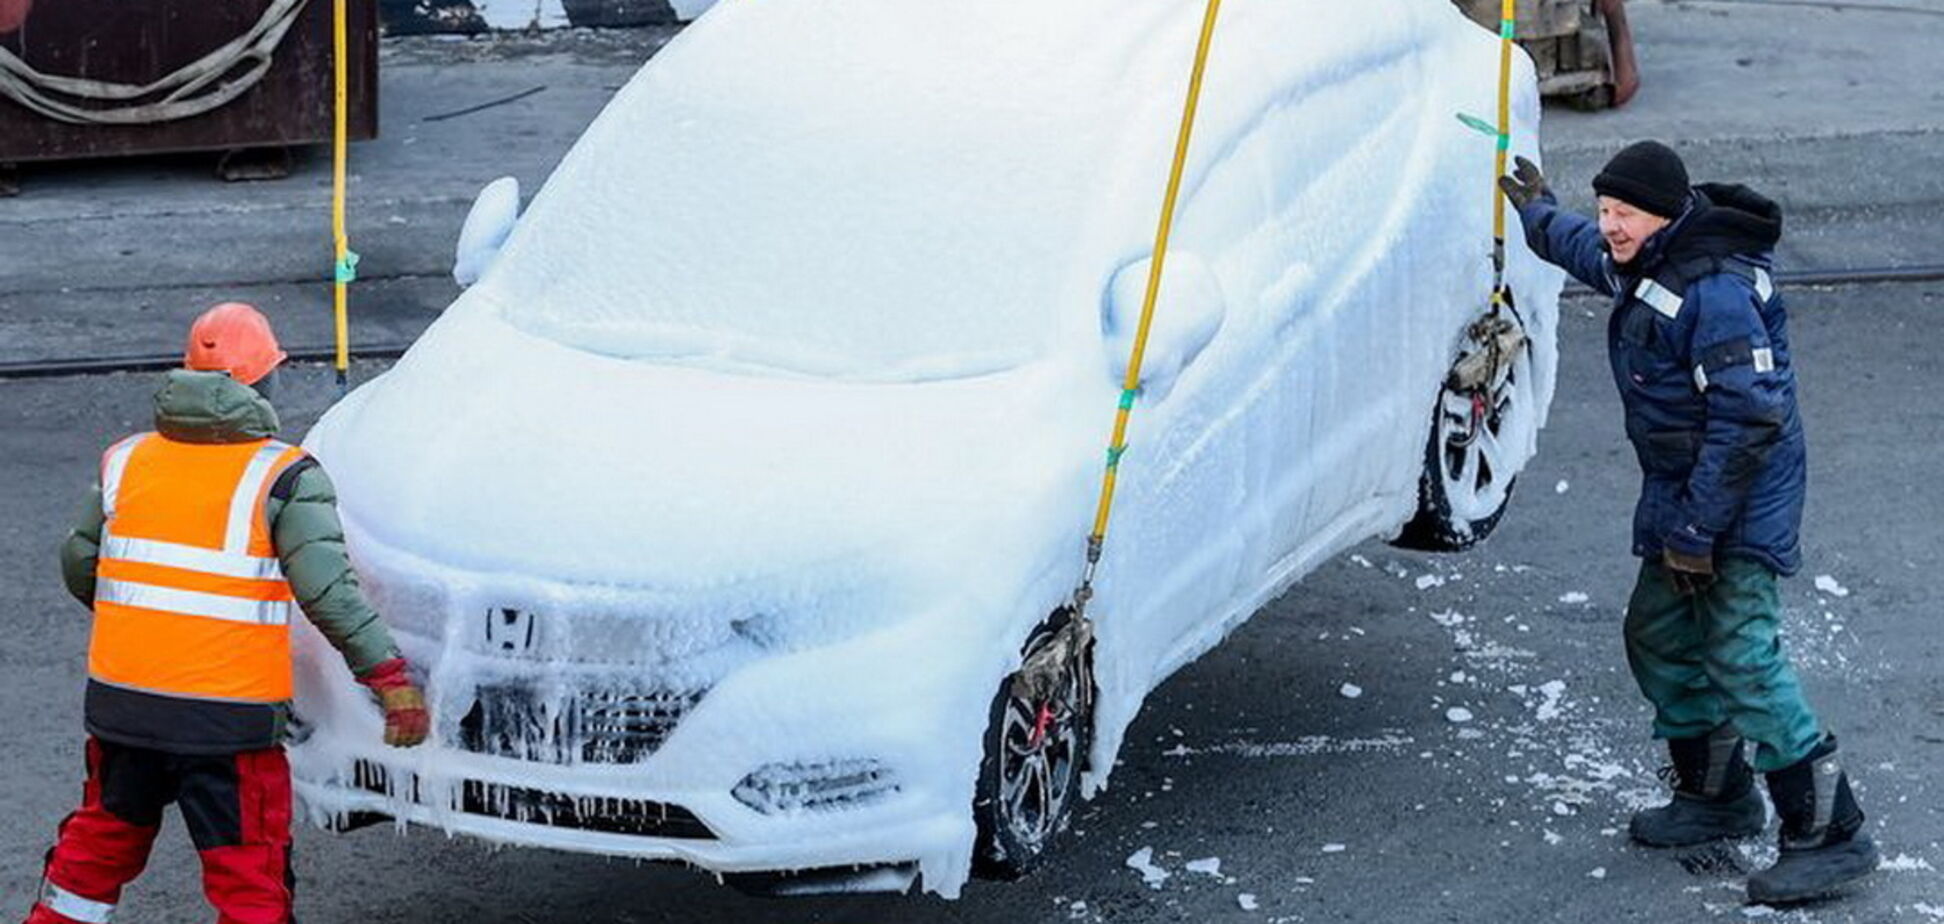 Партия авто из Японии превратилась в ледяные скульптуры. Видео